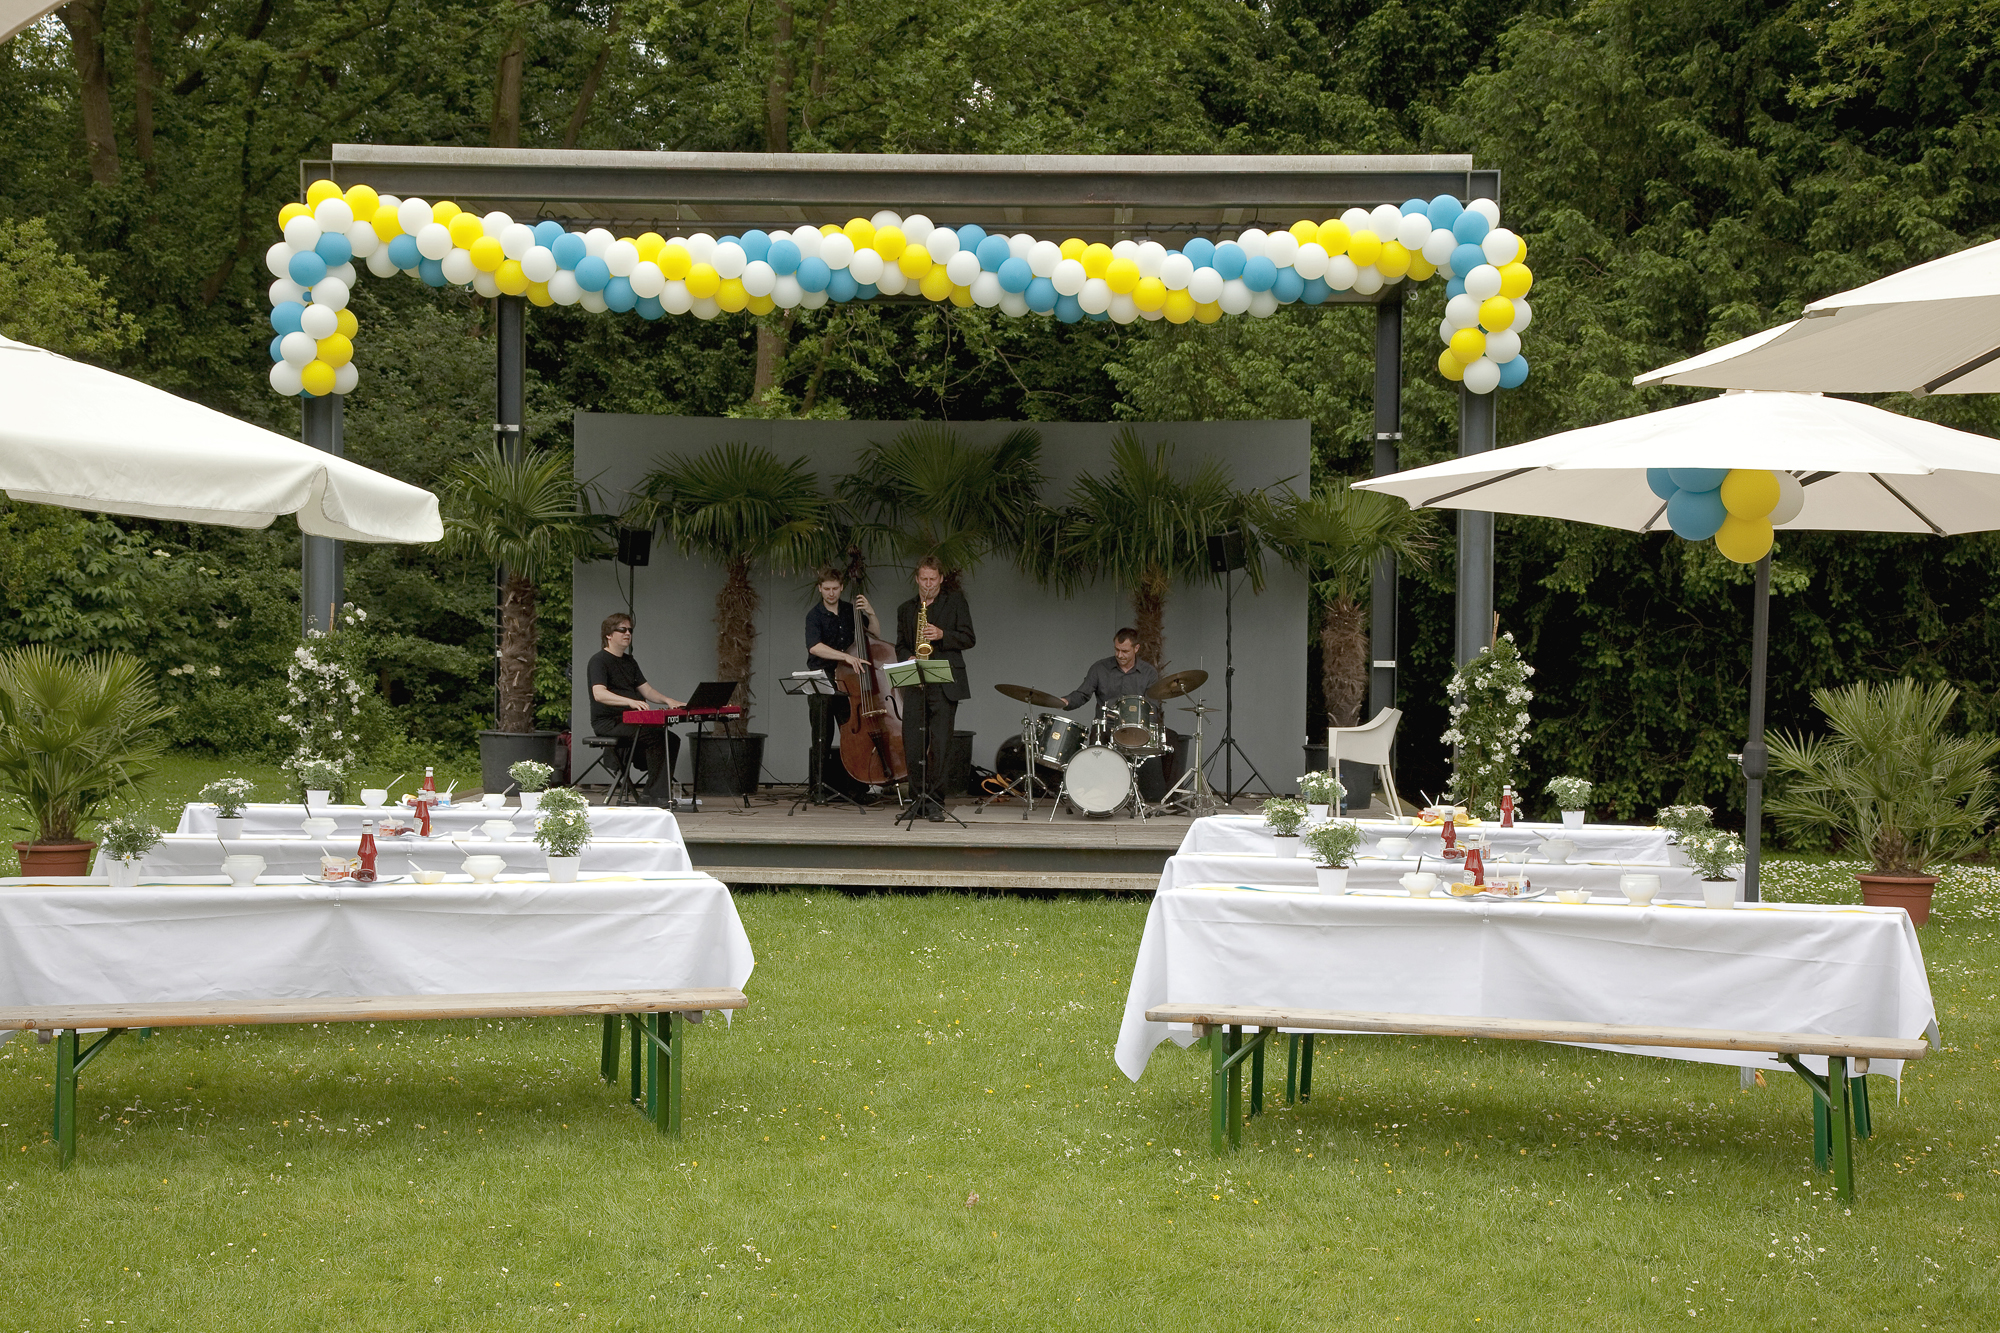 Veranstaltung im Park mit geschmückten Tischen und Band auf der Bühne. 